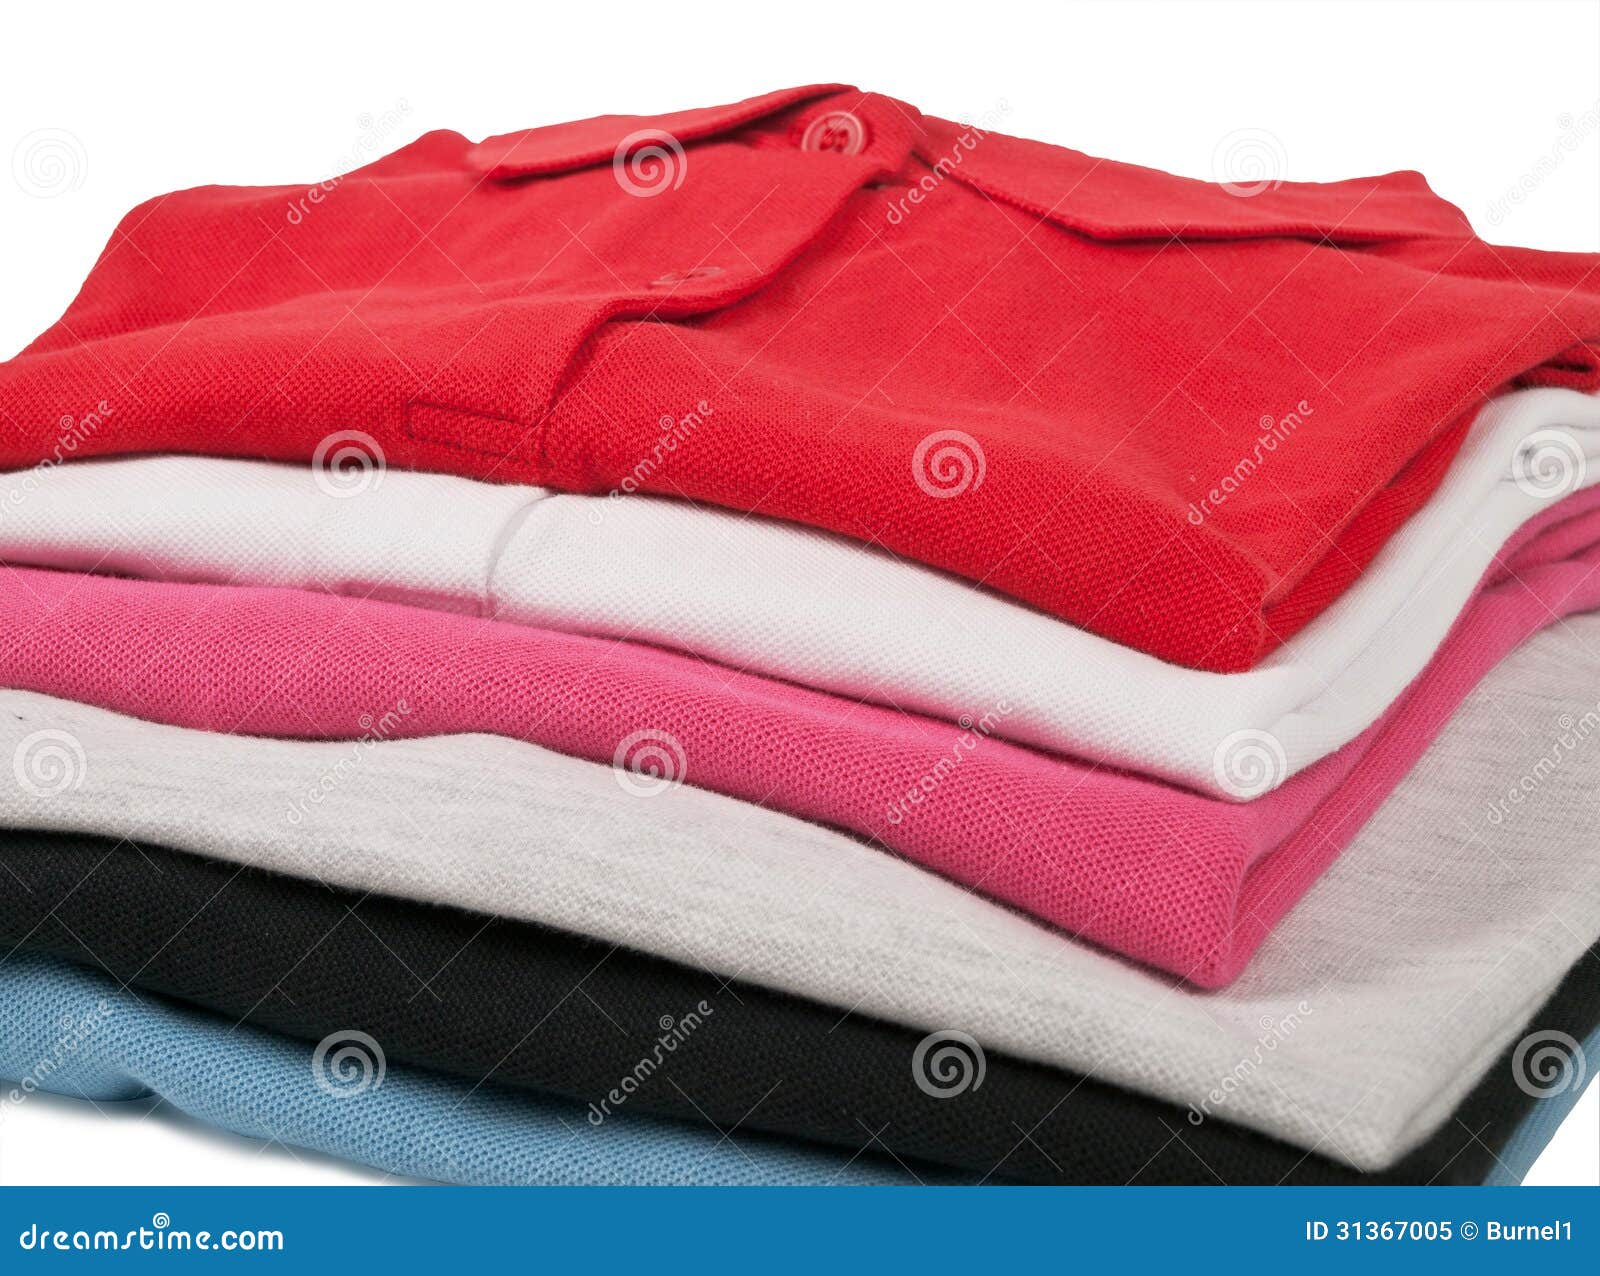 Colorful polo t-shirts stock image. Image of orange, isolated - 31367005